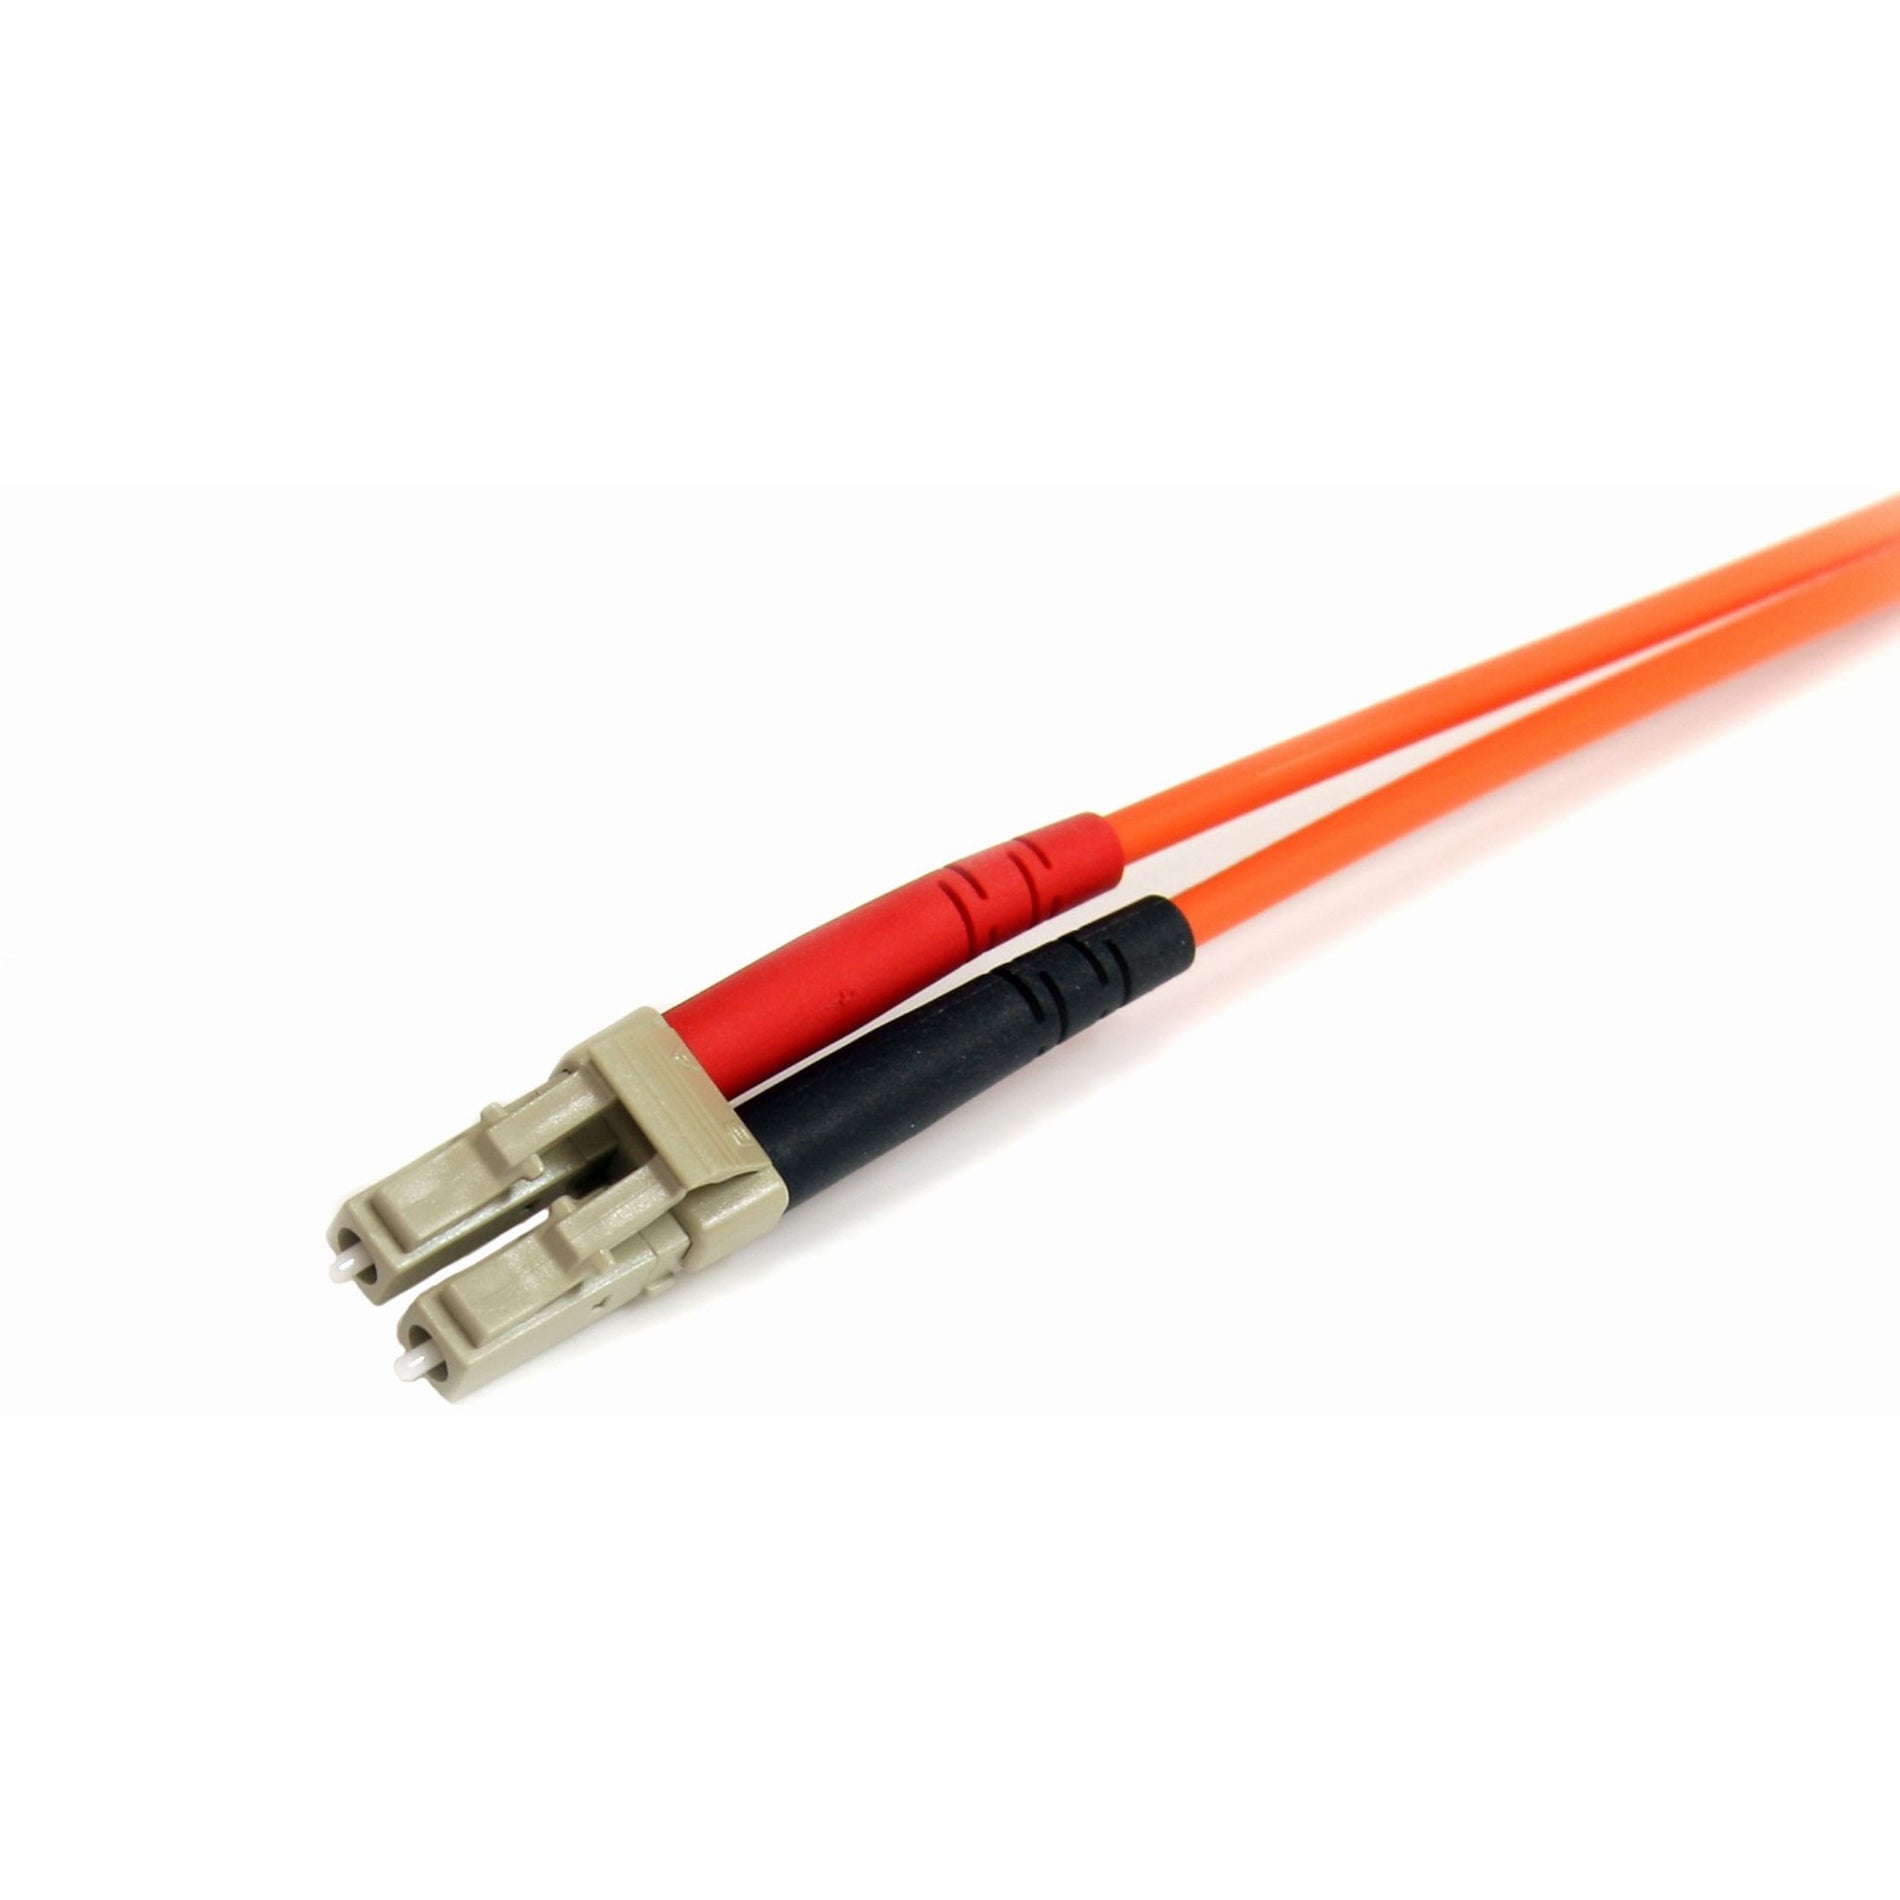 StarTech.com FIBLCST2 2m Multimode 62.5/125 Duplex Fiber Patch Cable LC - ST, 10 Gbit/s Data Transfer Rate, Orange